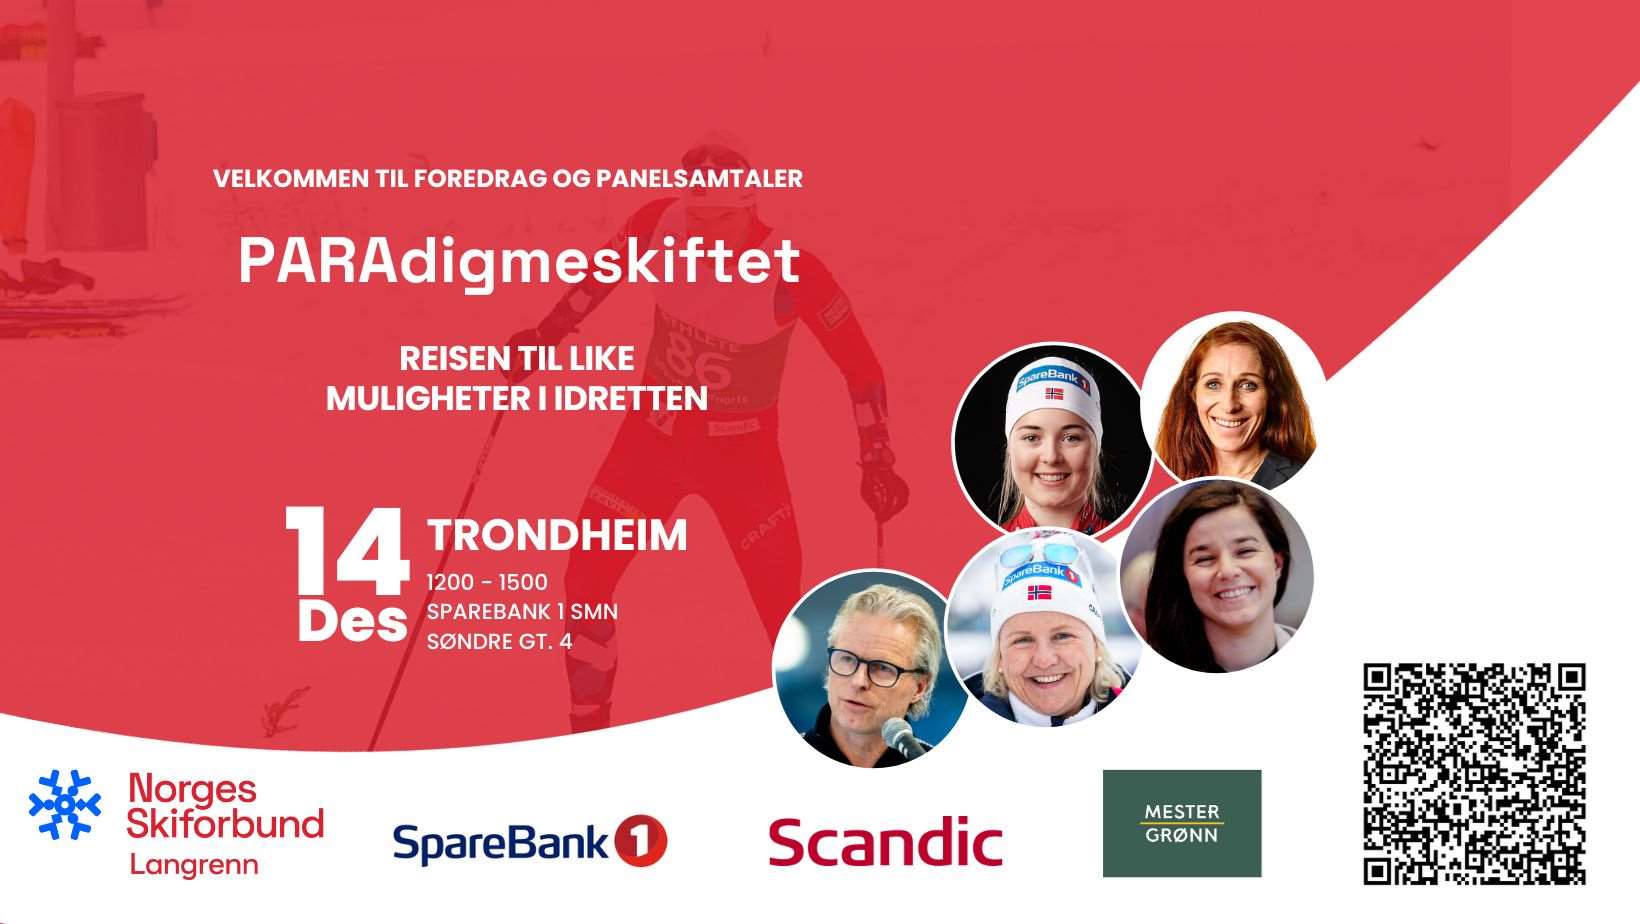 Det inviteres til seminar og debatt i Trondheim 14. desember: PARAdigmeskiftet - reisen til like muligheter i idretten.